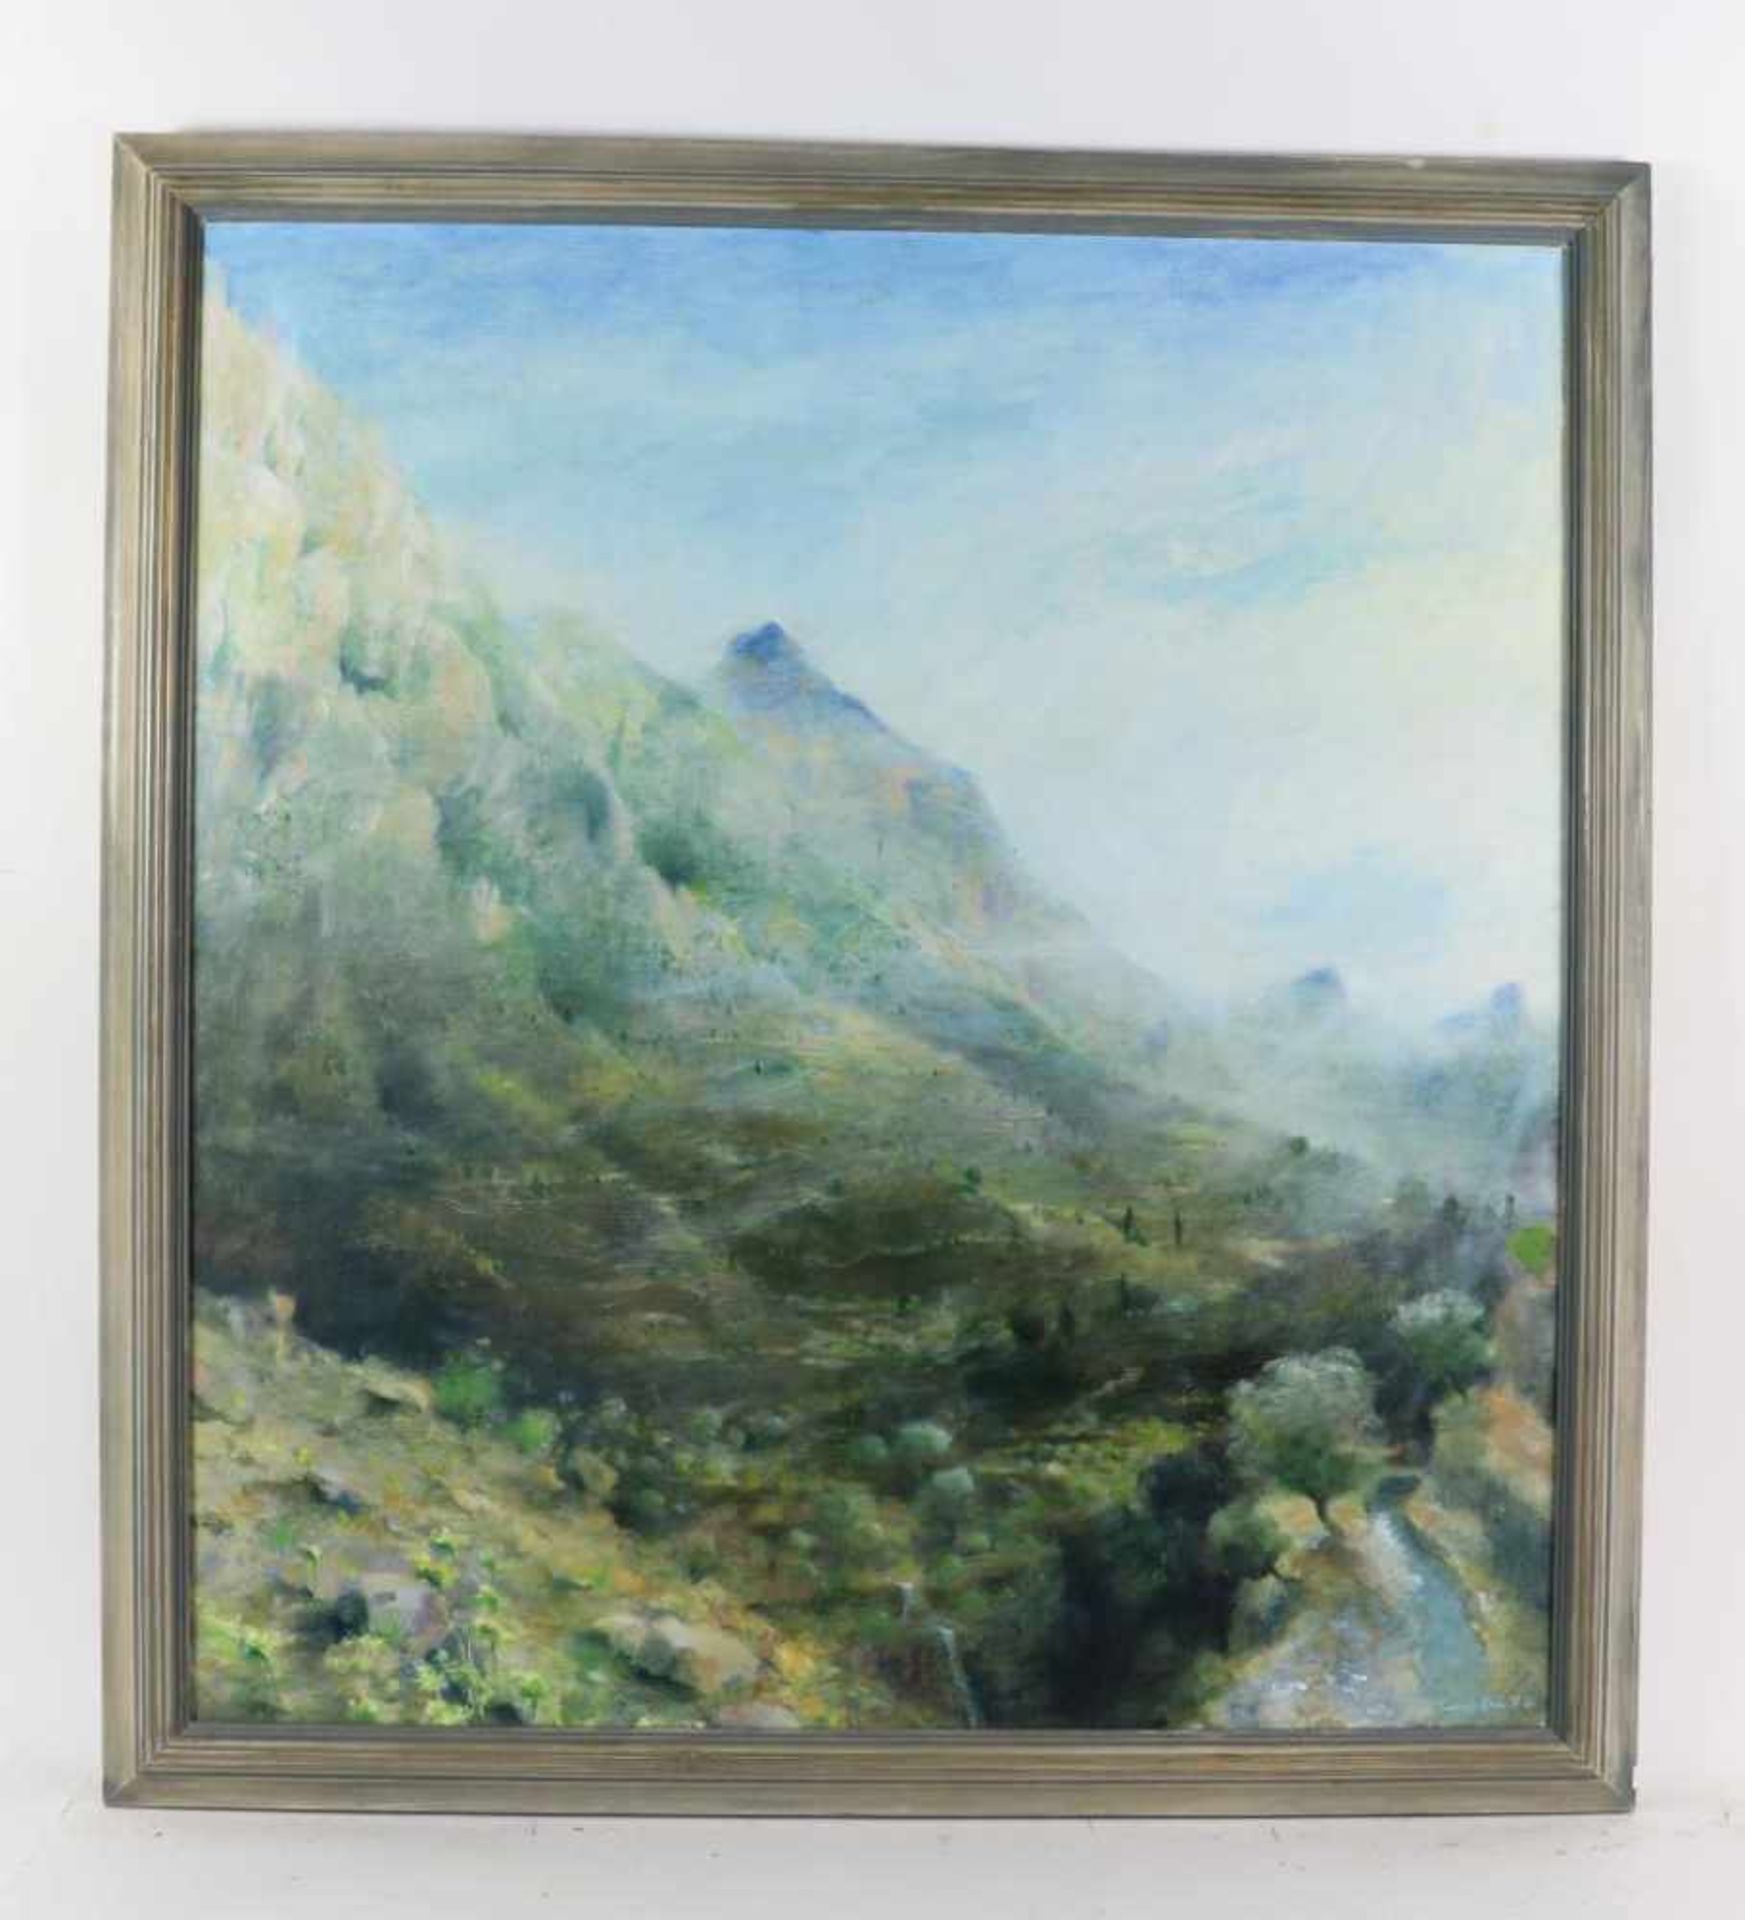 LEE TERRY (1935), ges. en gedat. 1986 berglandschap, doek 100 x 90 cm. - Bild 2 aus 4